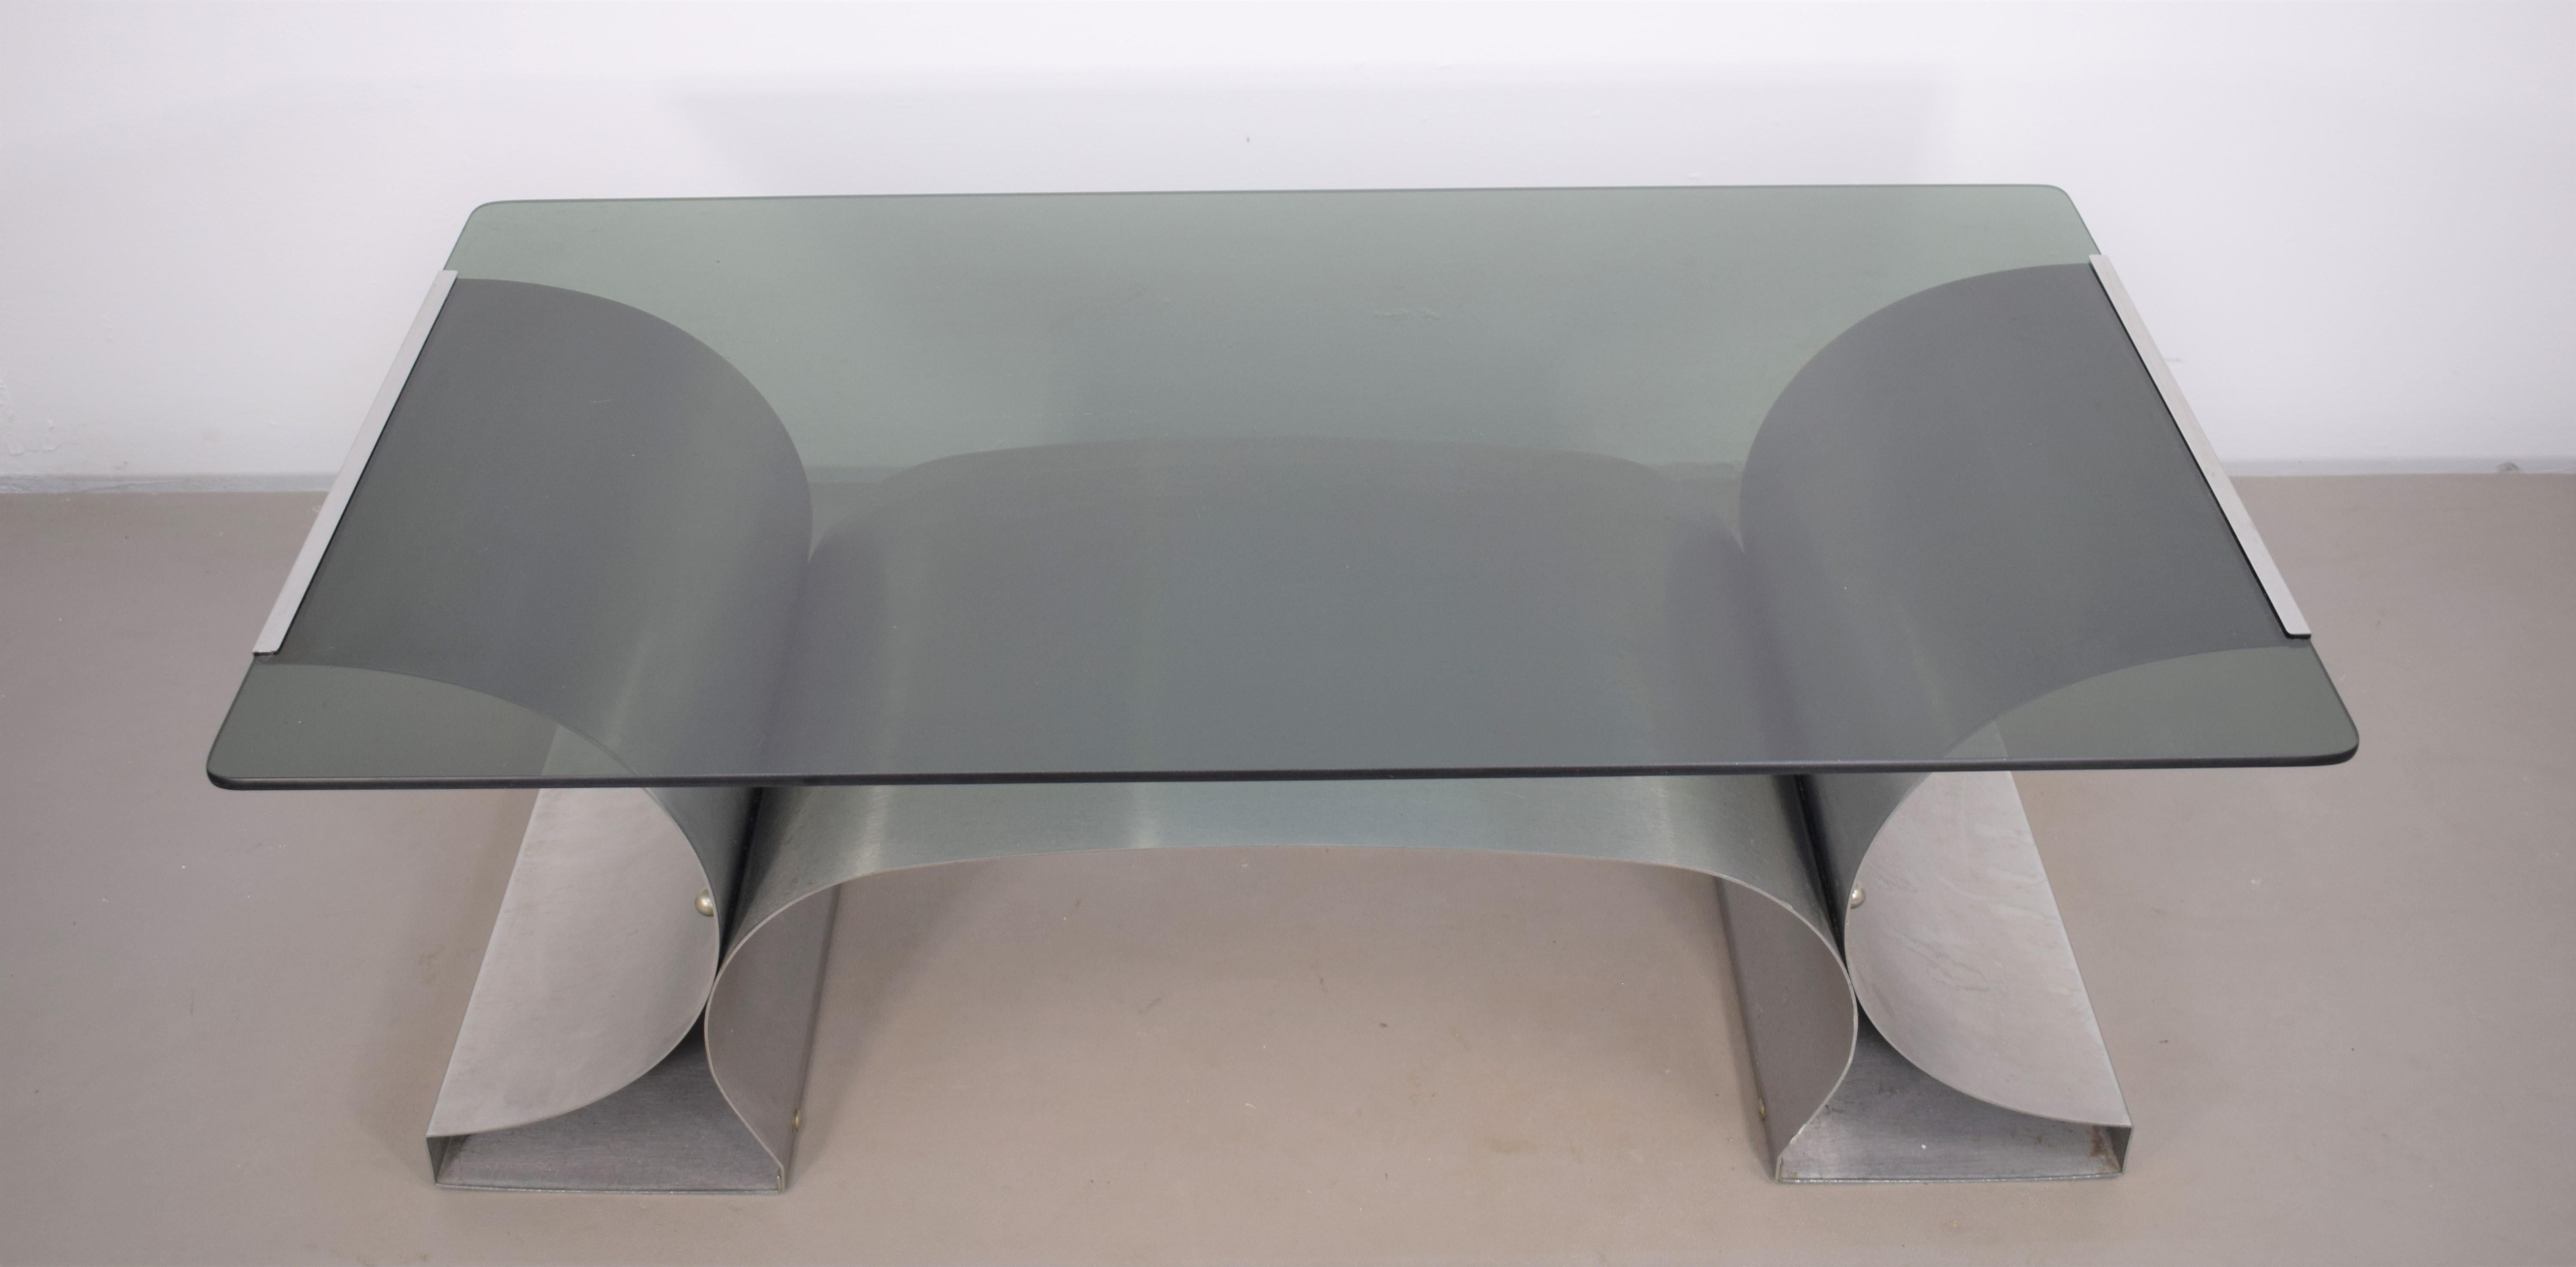 Rectangular coffee table by Francois Monnet, France, 1970s.

Dimensions: H= 40 cm; W= 105 cm; D= 60 cm.